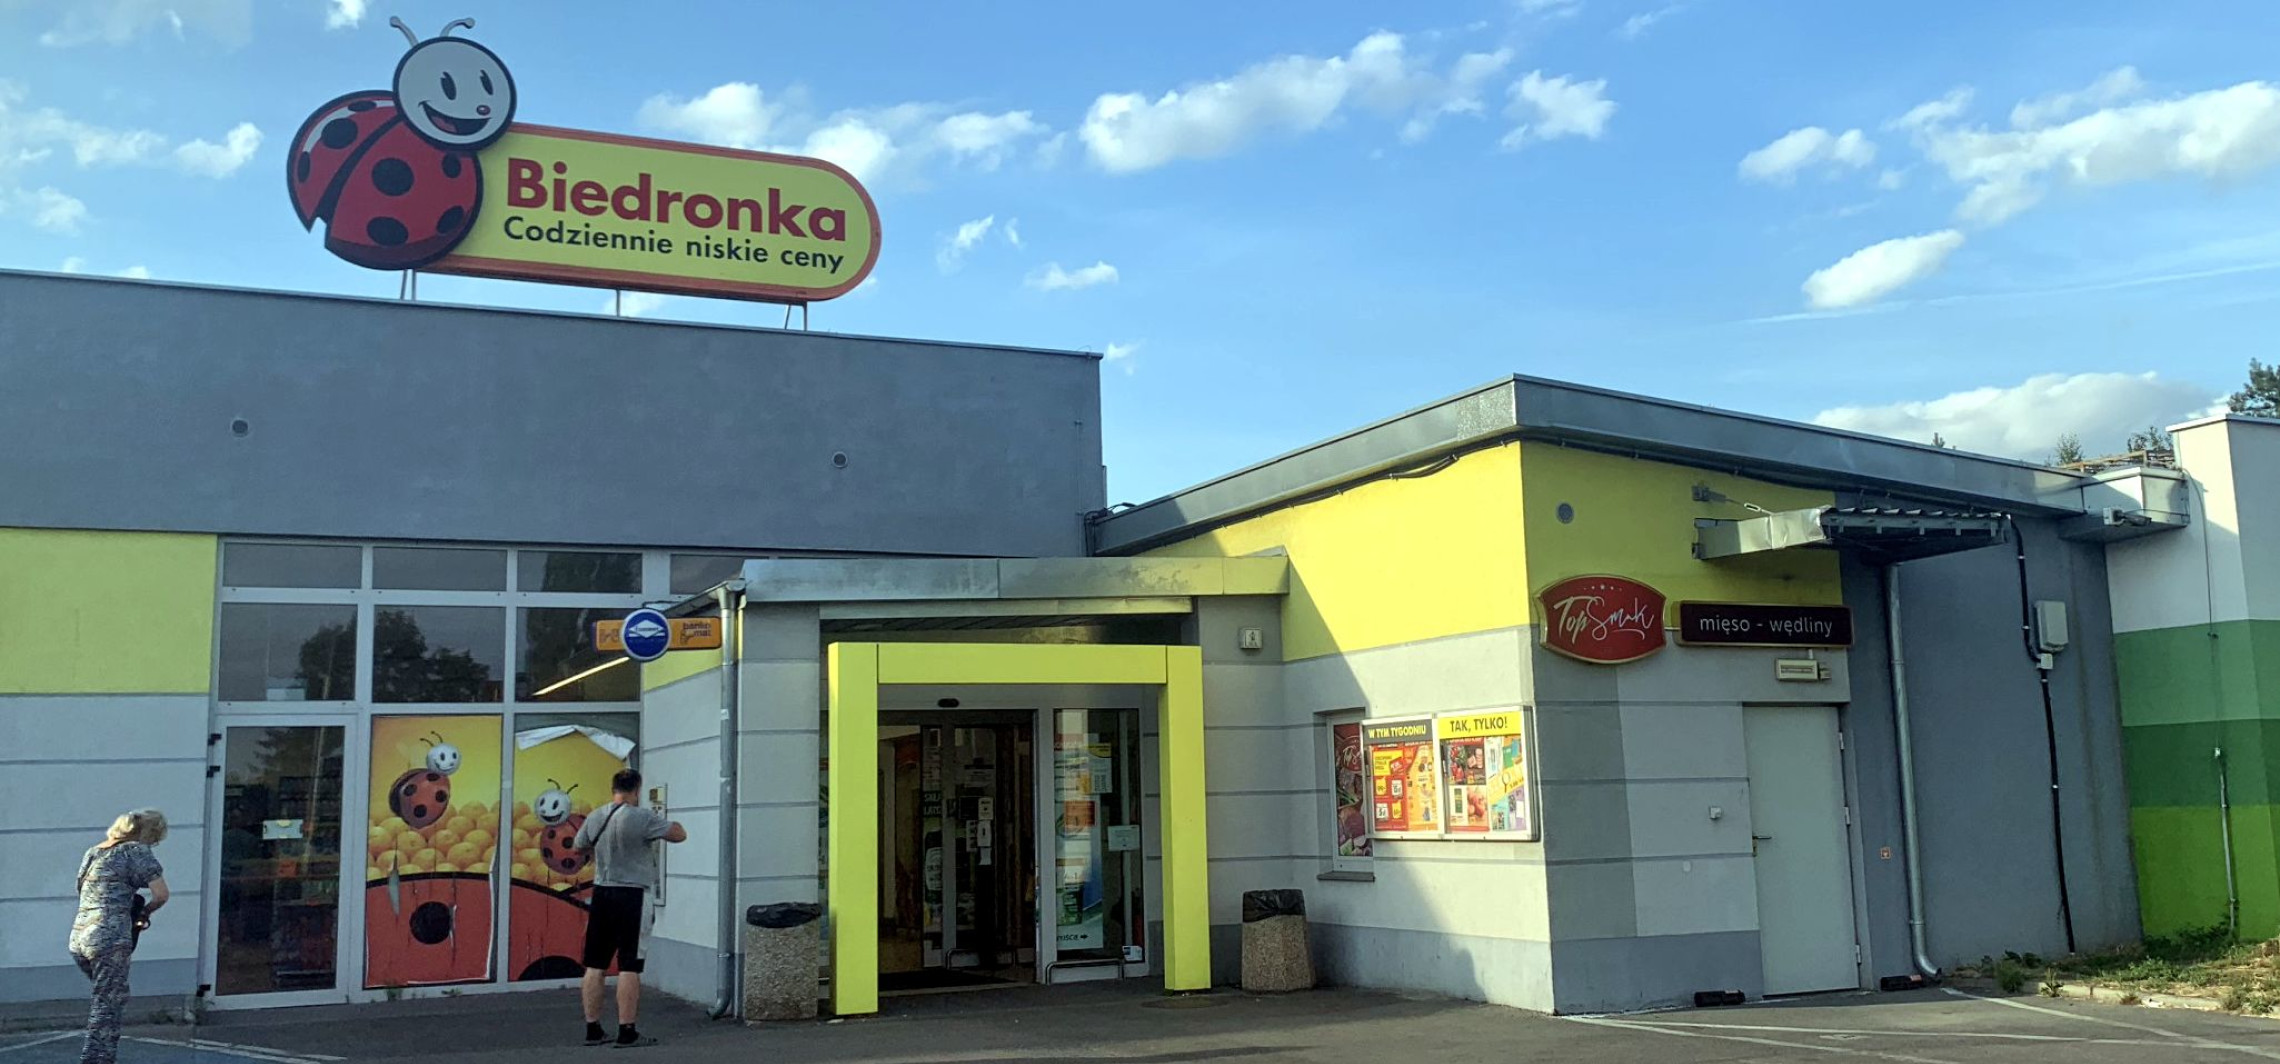 Inowrocław - Kolejny market czynny w niedziele. Jak długo?